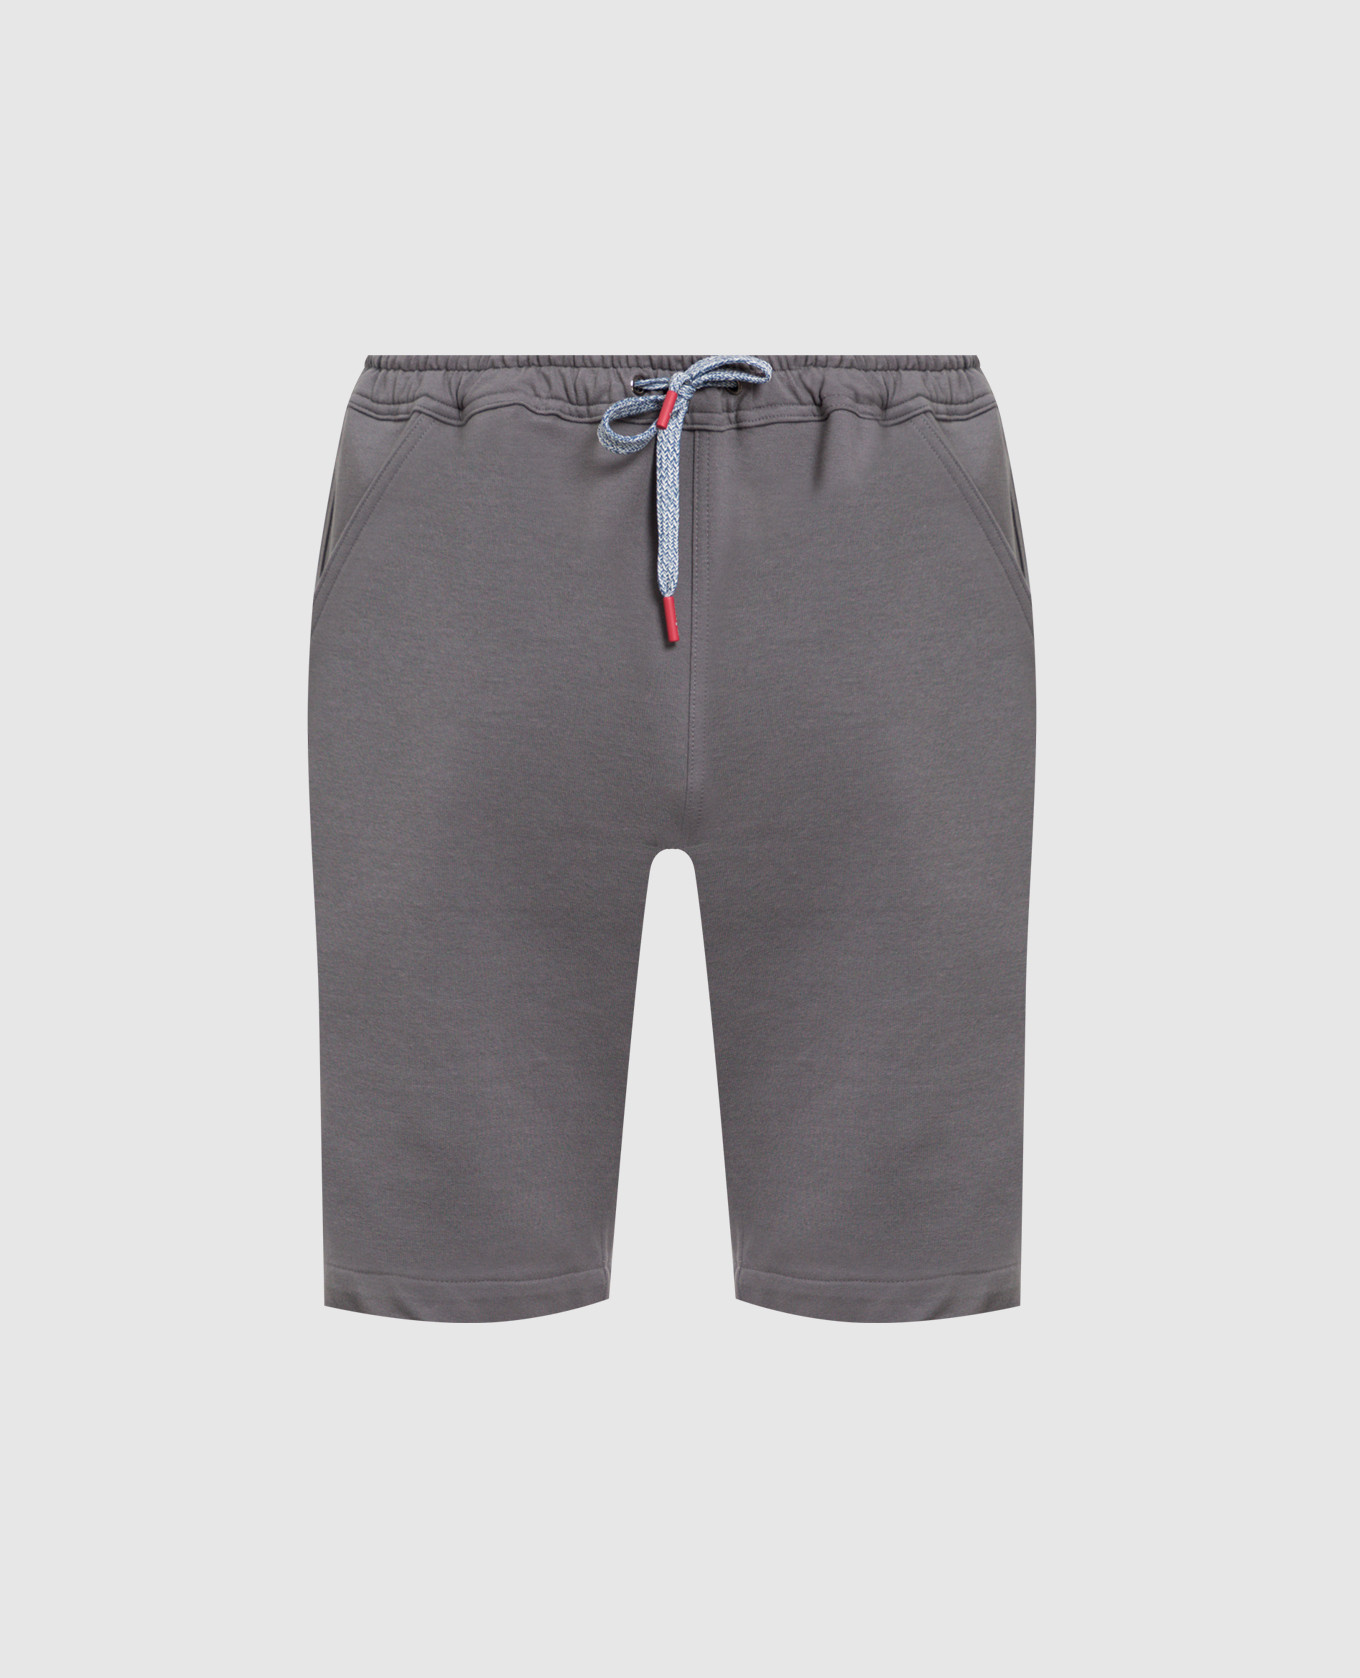 Gray shorts